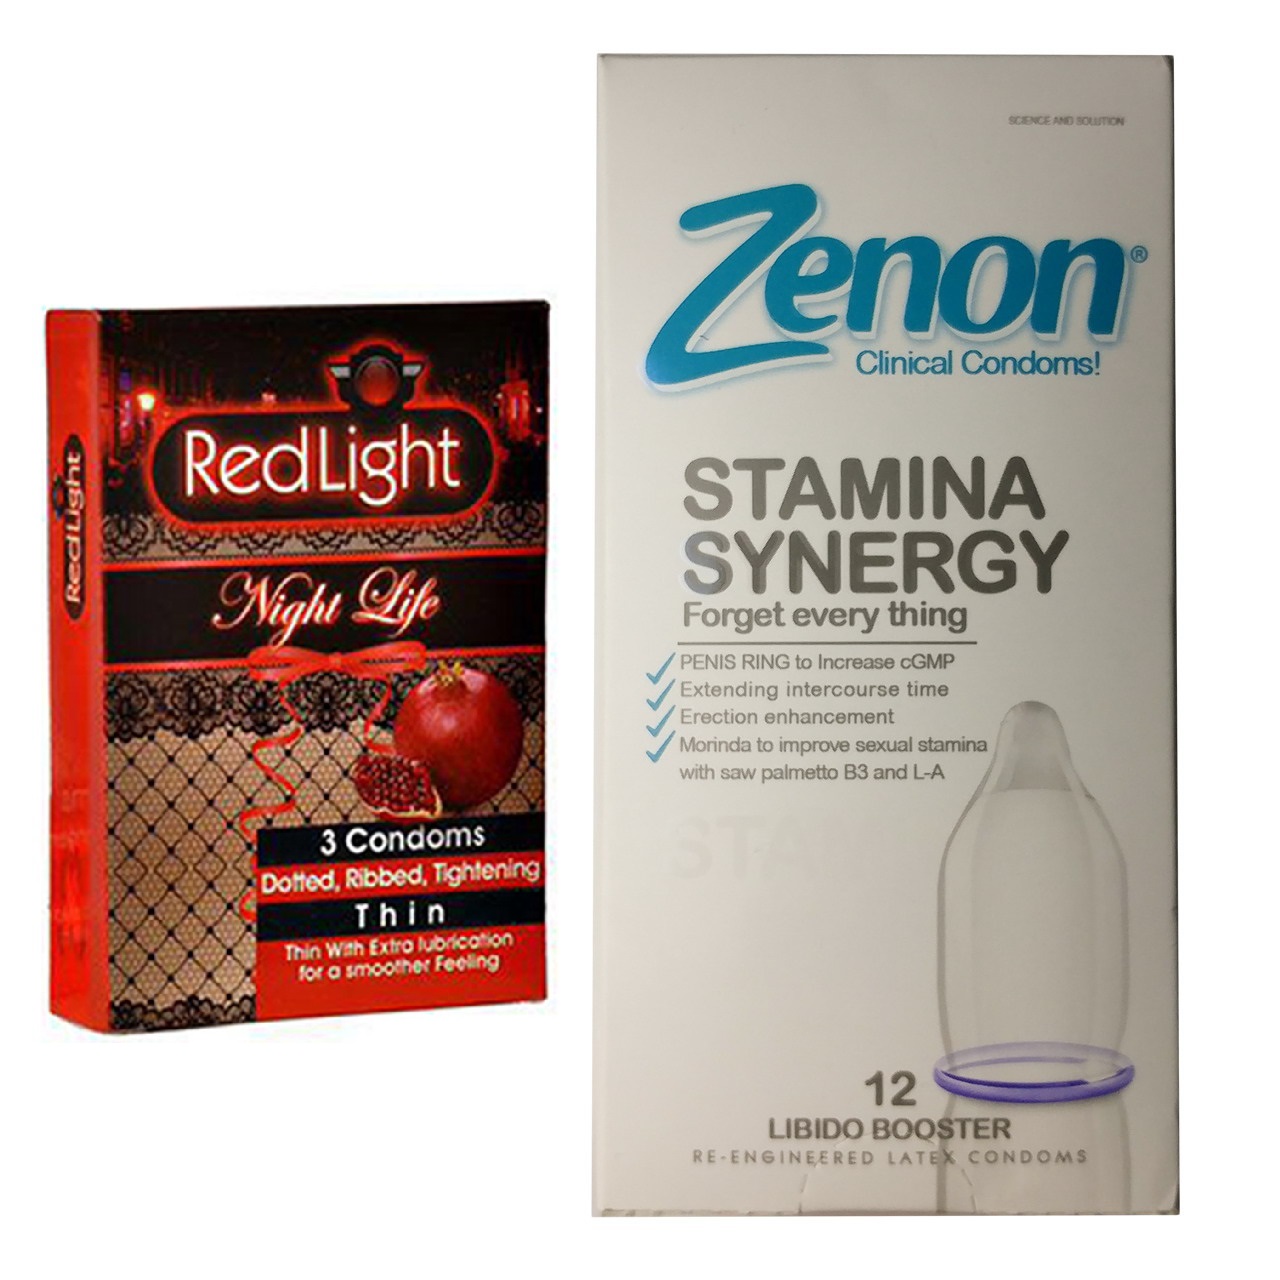 کاندوم زنون مدل Stamina Synergy بسته 12 عددی به همراه کاندوم ردلایت مدل Night Life بسته 3 عددی